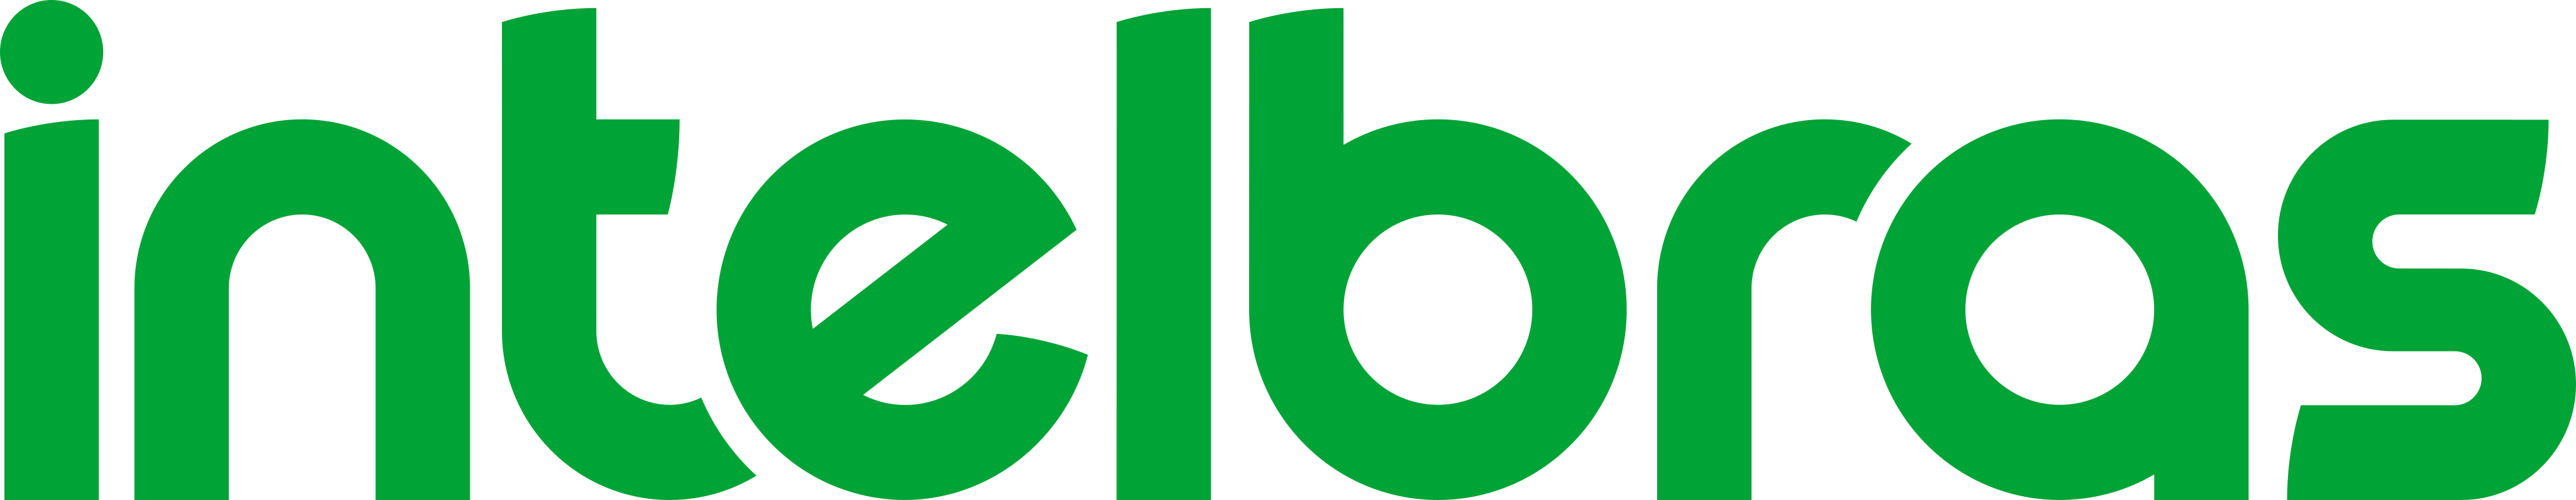 Intelbras Logo 6 2